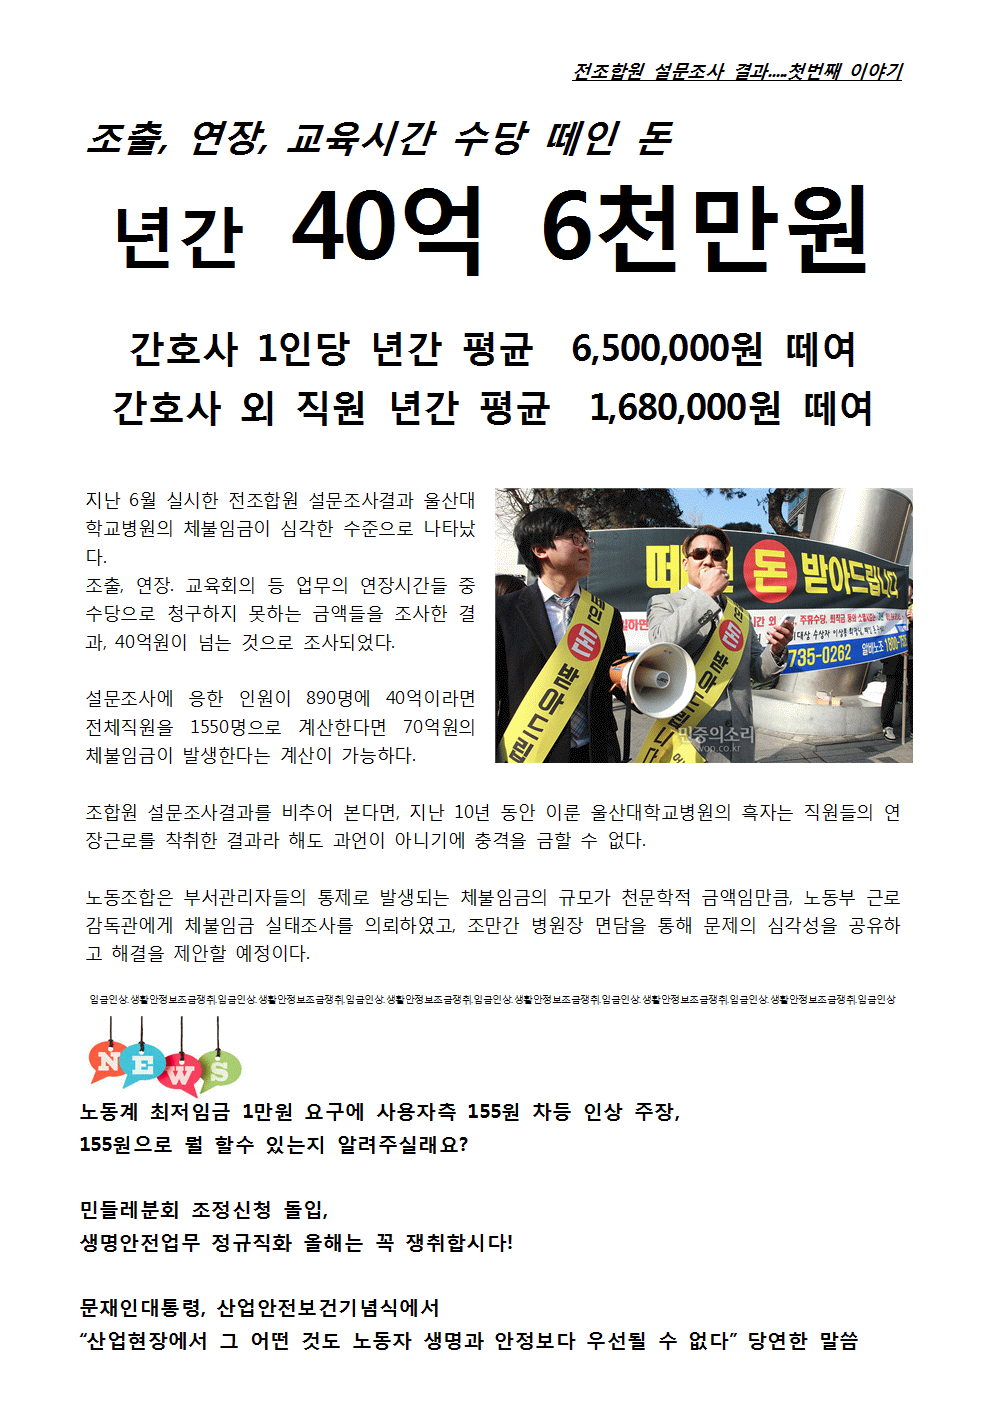 2017_투쟁속보 22호 뒷면001.gif